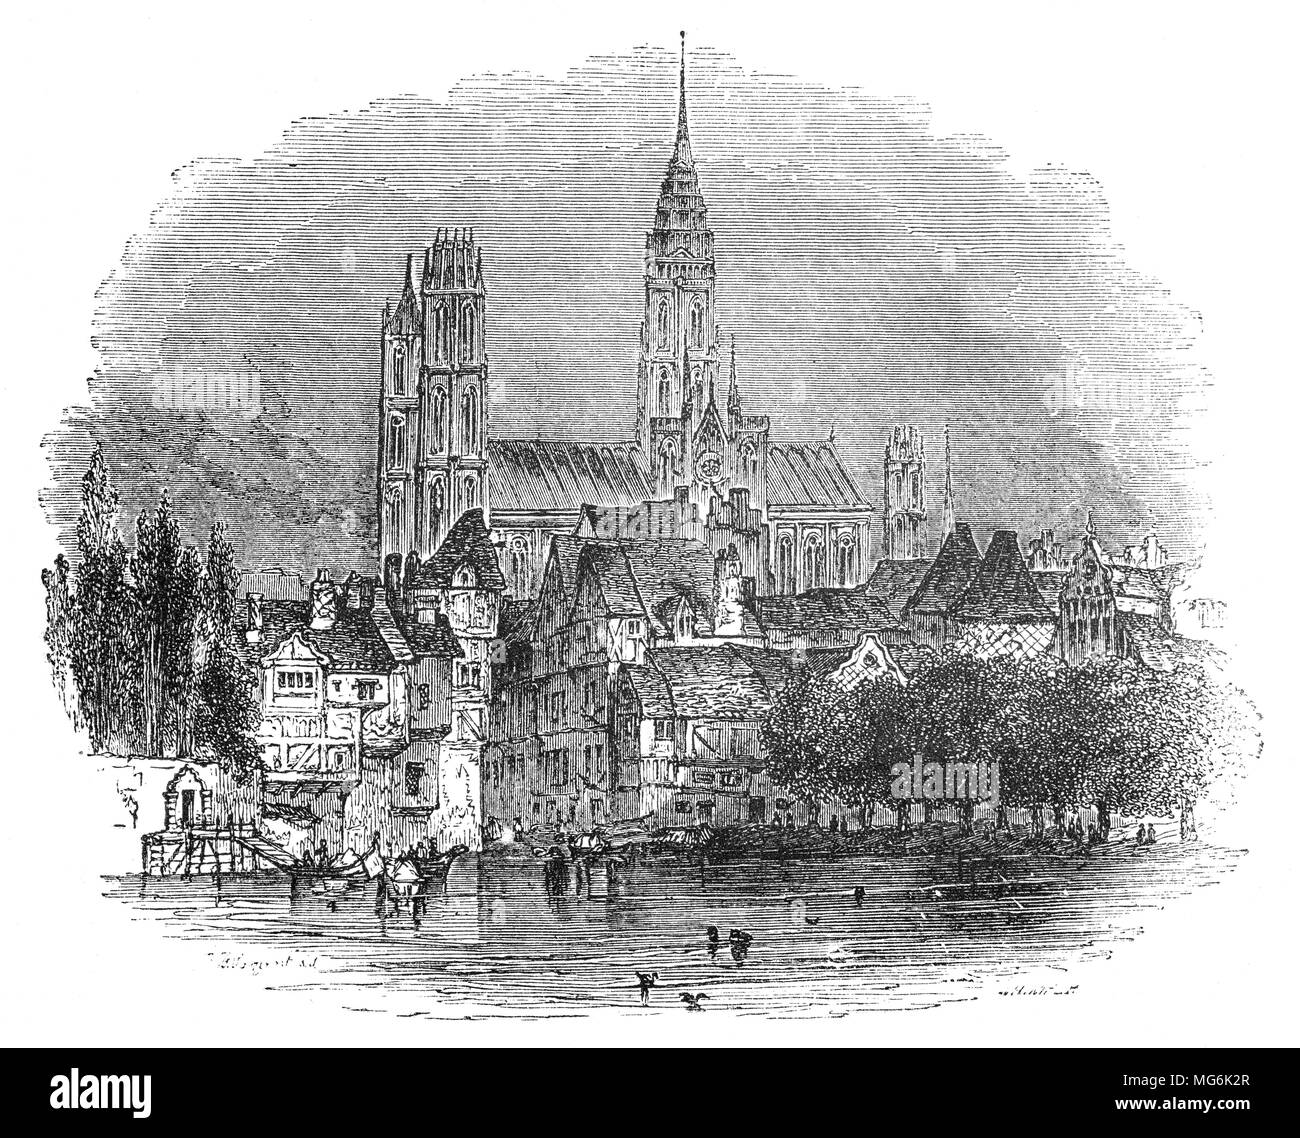 La Cathédrale et la ville de Rouen, une ville sur la Seine dans le nord de la France. C'est la capitale de la région de Normandie. Autrefois le siège de l'Échiquier de Normandie au Moyen Âge. Il a été l'une des capitales de la dynastie anglo-normande, qui a jugé les deux grandes parties de l'Angleterre et la France moderne du 11ème au 15ème siècles. Banque D'Images